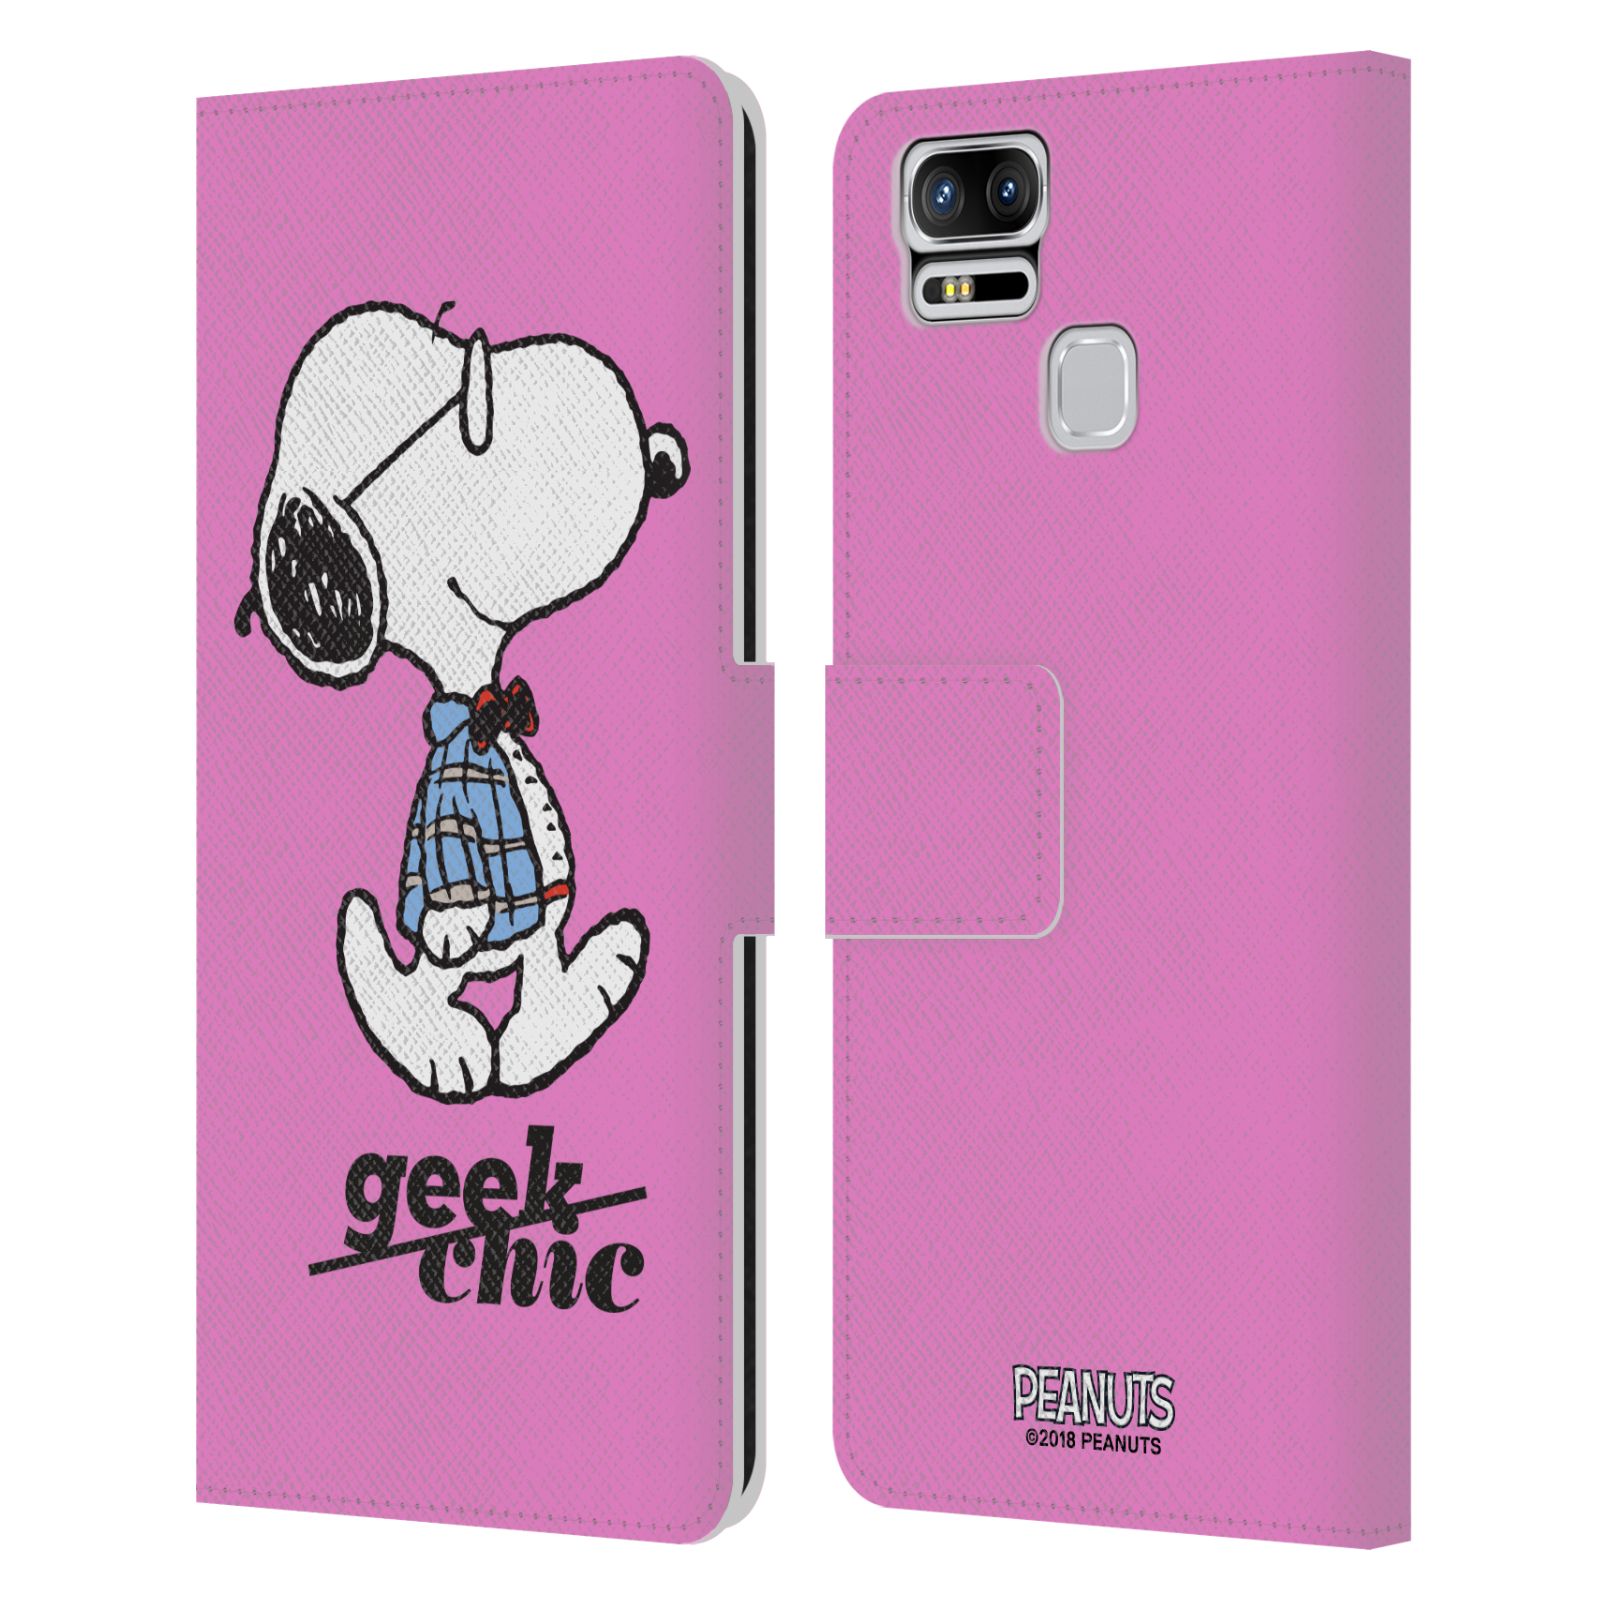 Pouzdro na mobil Asus Zenfone 3 Zoom ZE553KL - Head Case - Peanuts - růžový pejsek snoopy nerd